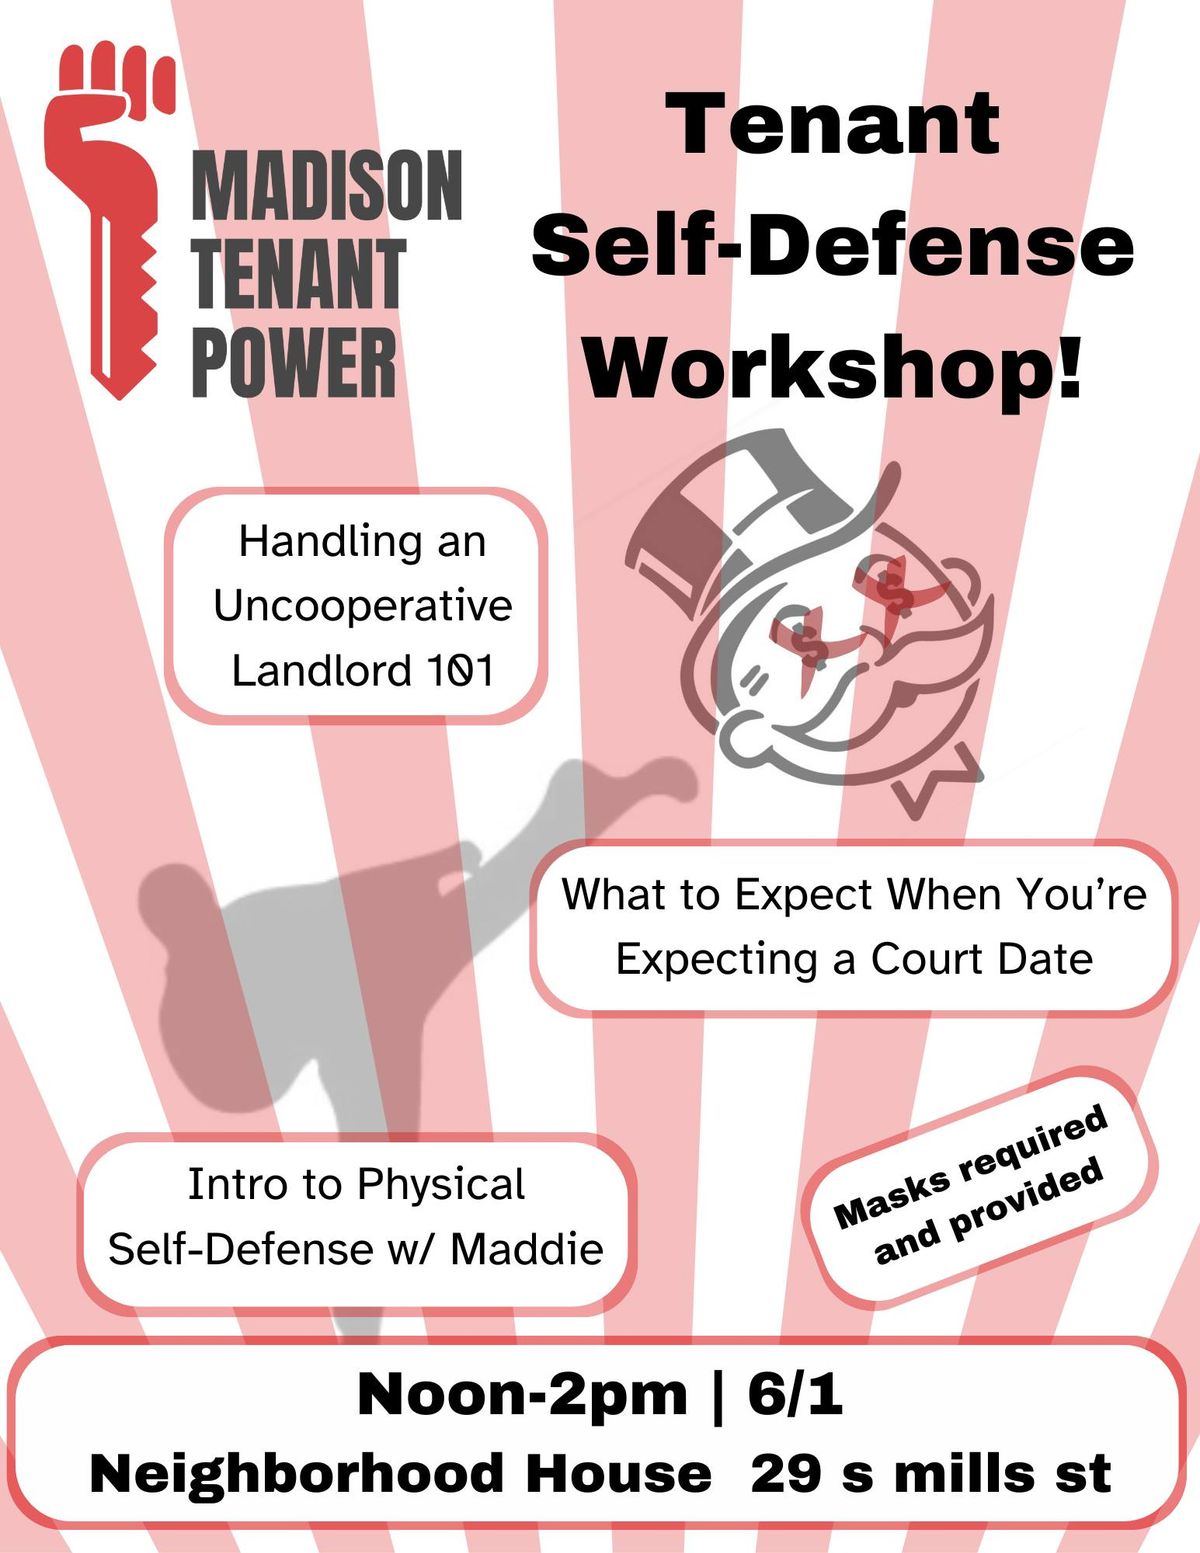 Tenant Self-Defense Workshop